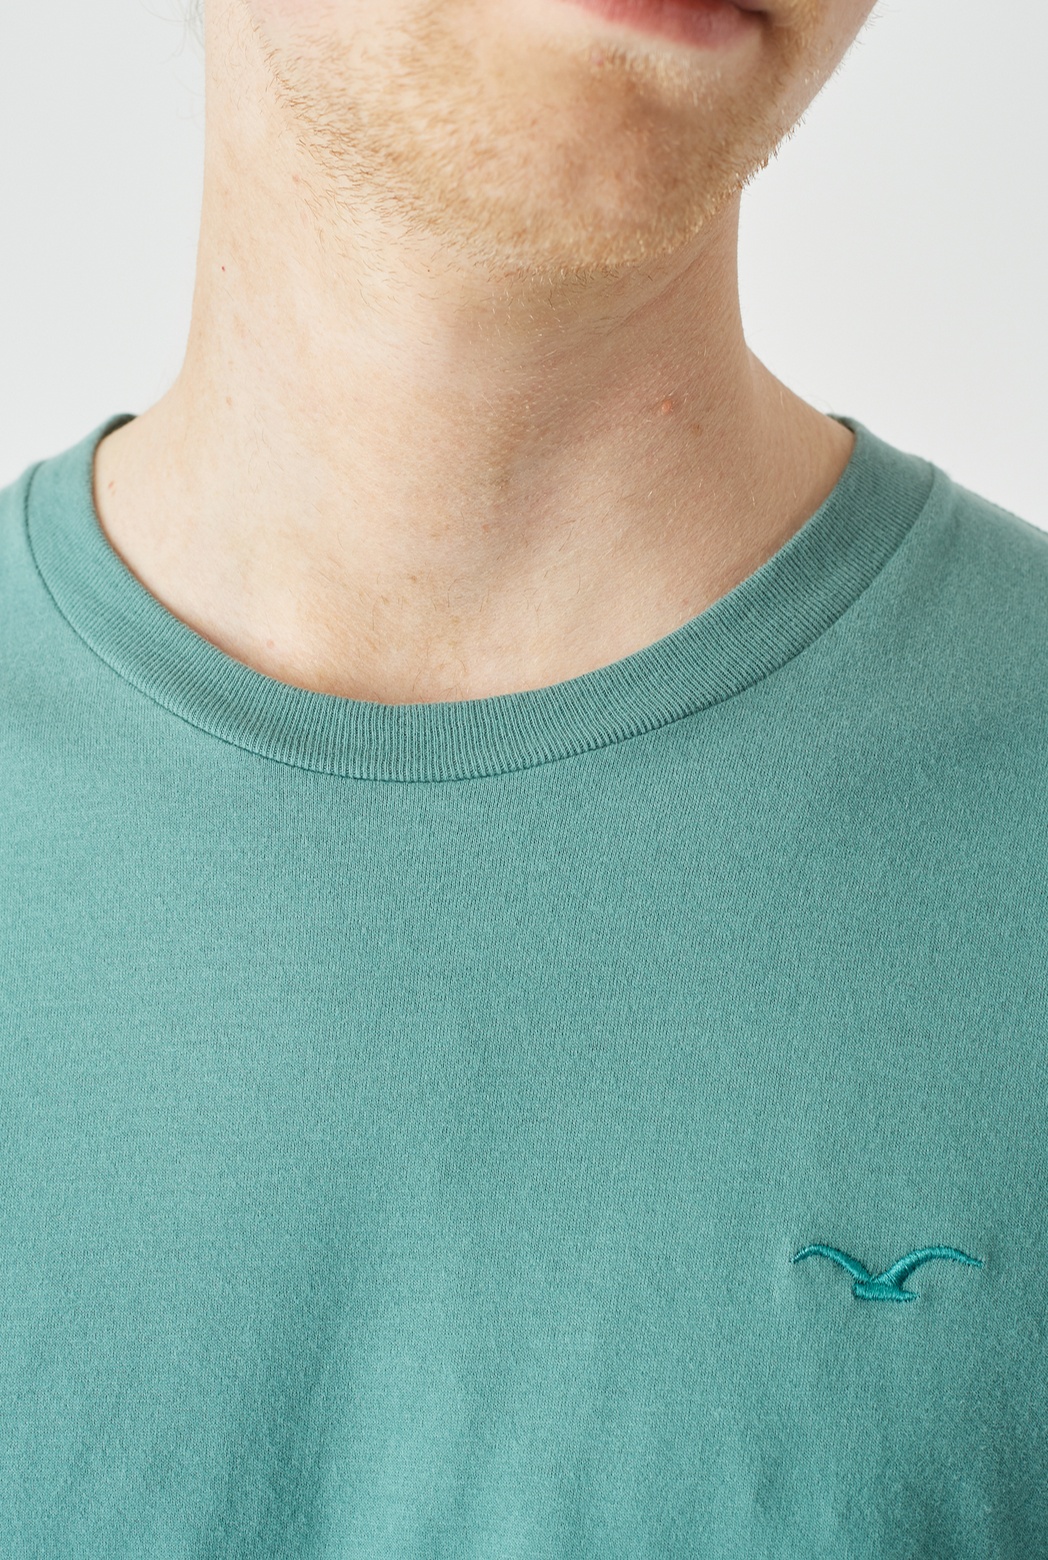 veganes BASIC vegane | Cleptomanicx Le Vegan Mode - Accessoires T-Shirt TEE blau und Shop in REGULAR LIGULL